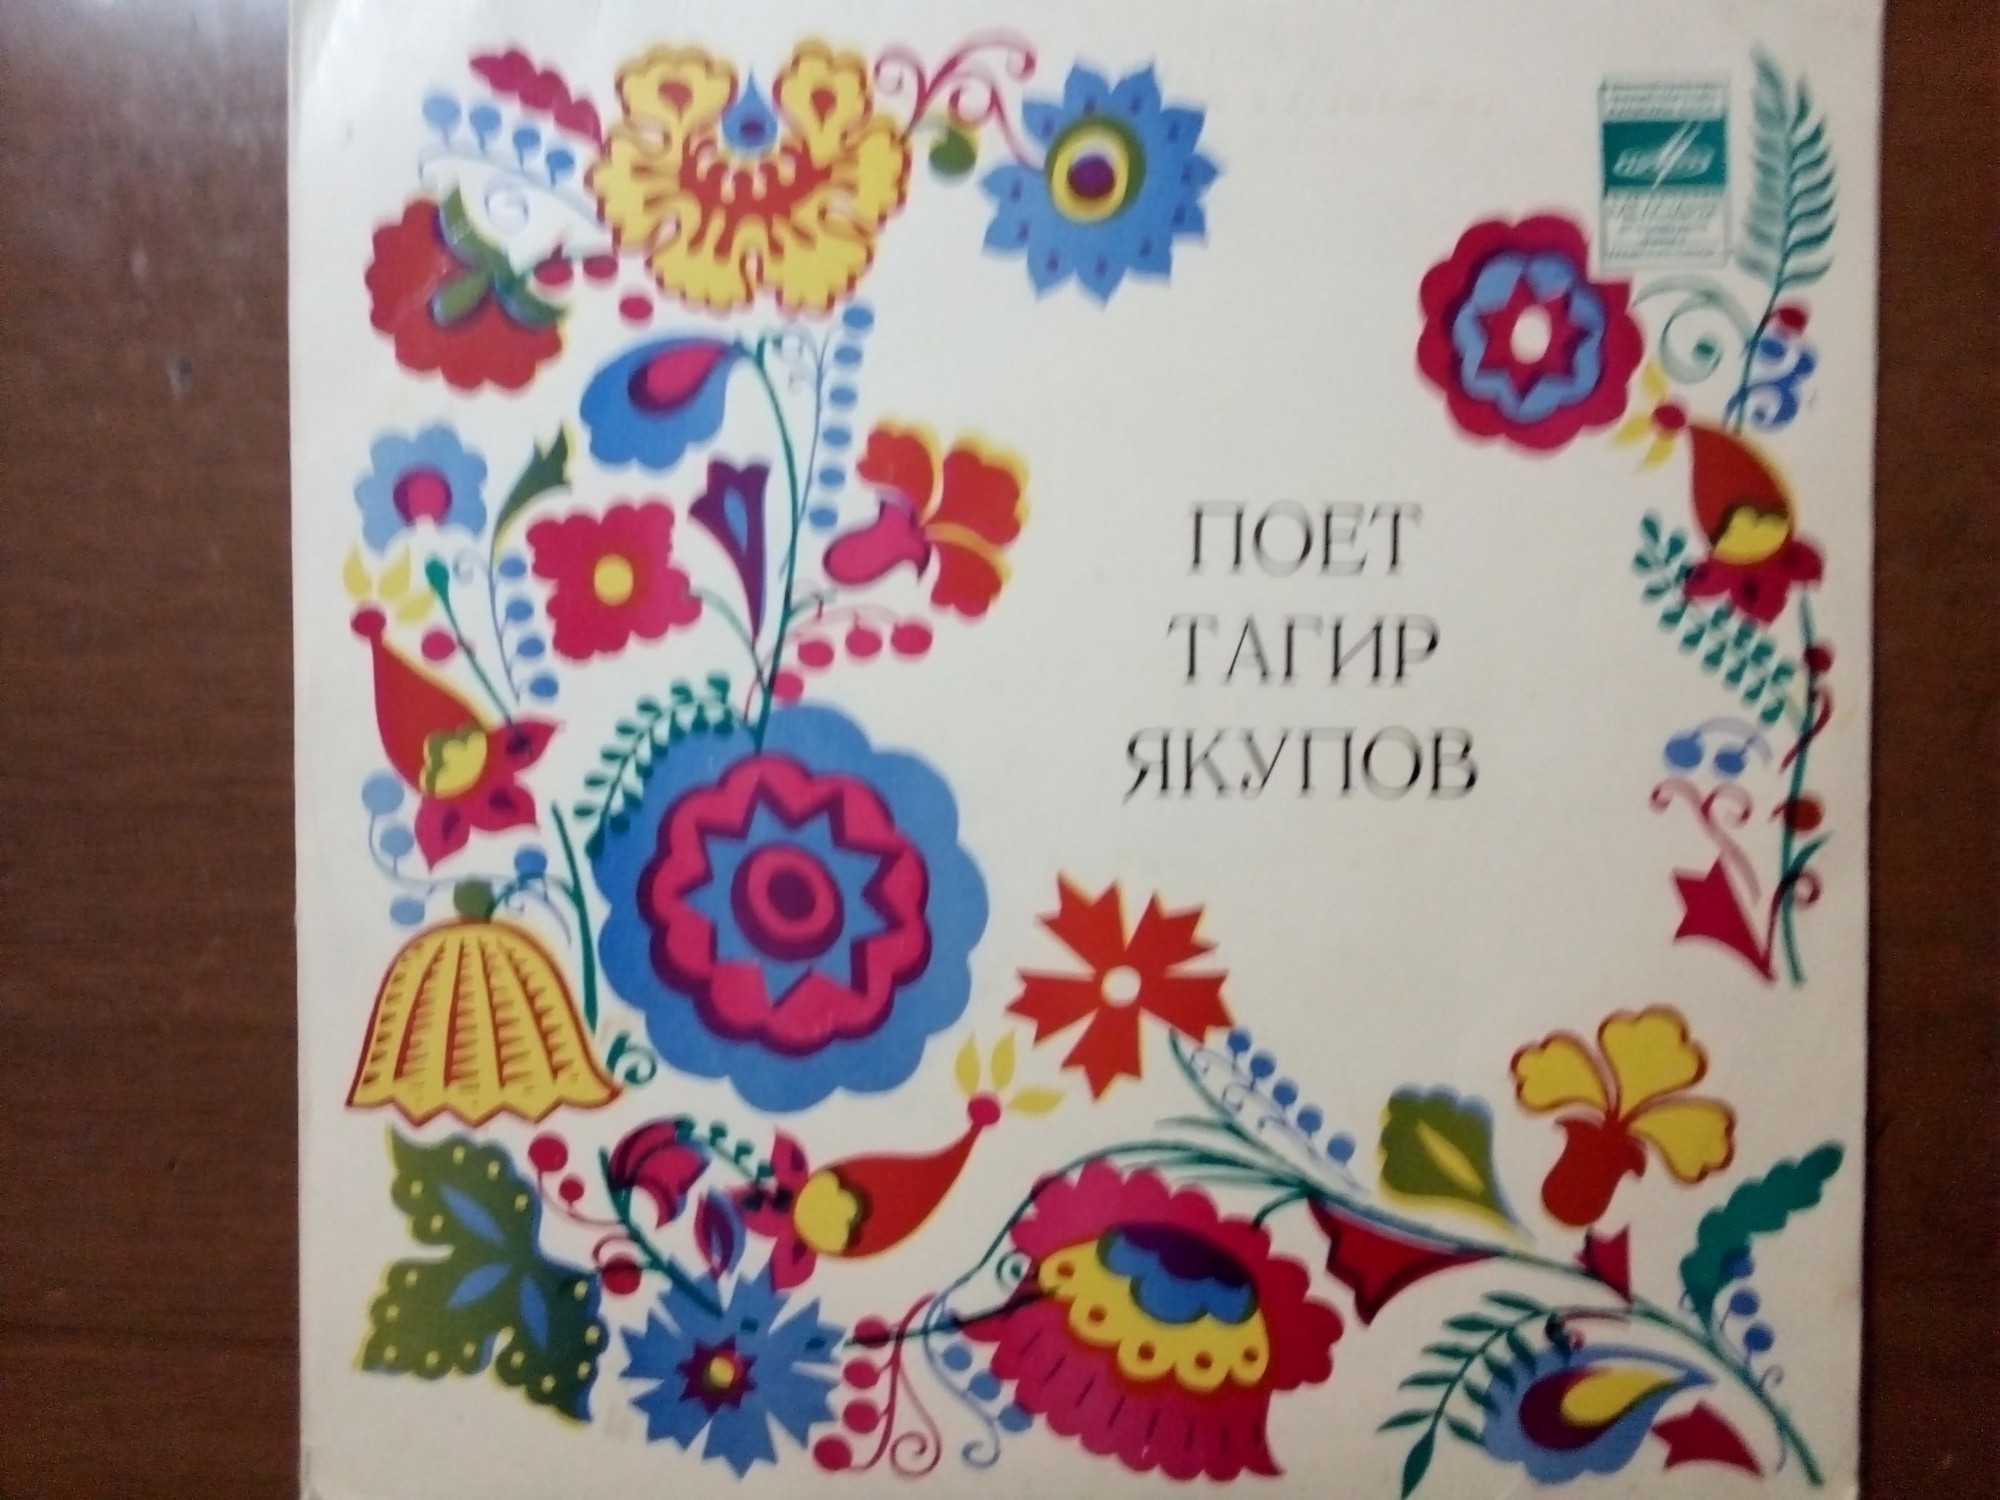 Тагир ЯКУПОВ: Татарские народные песни